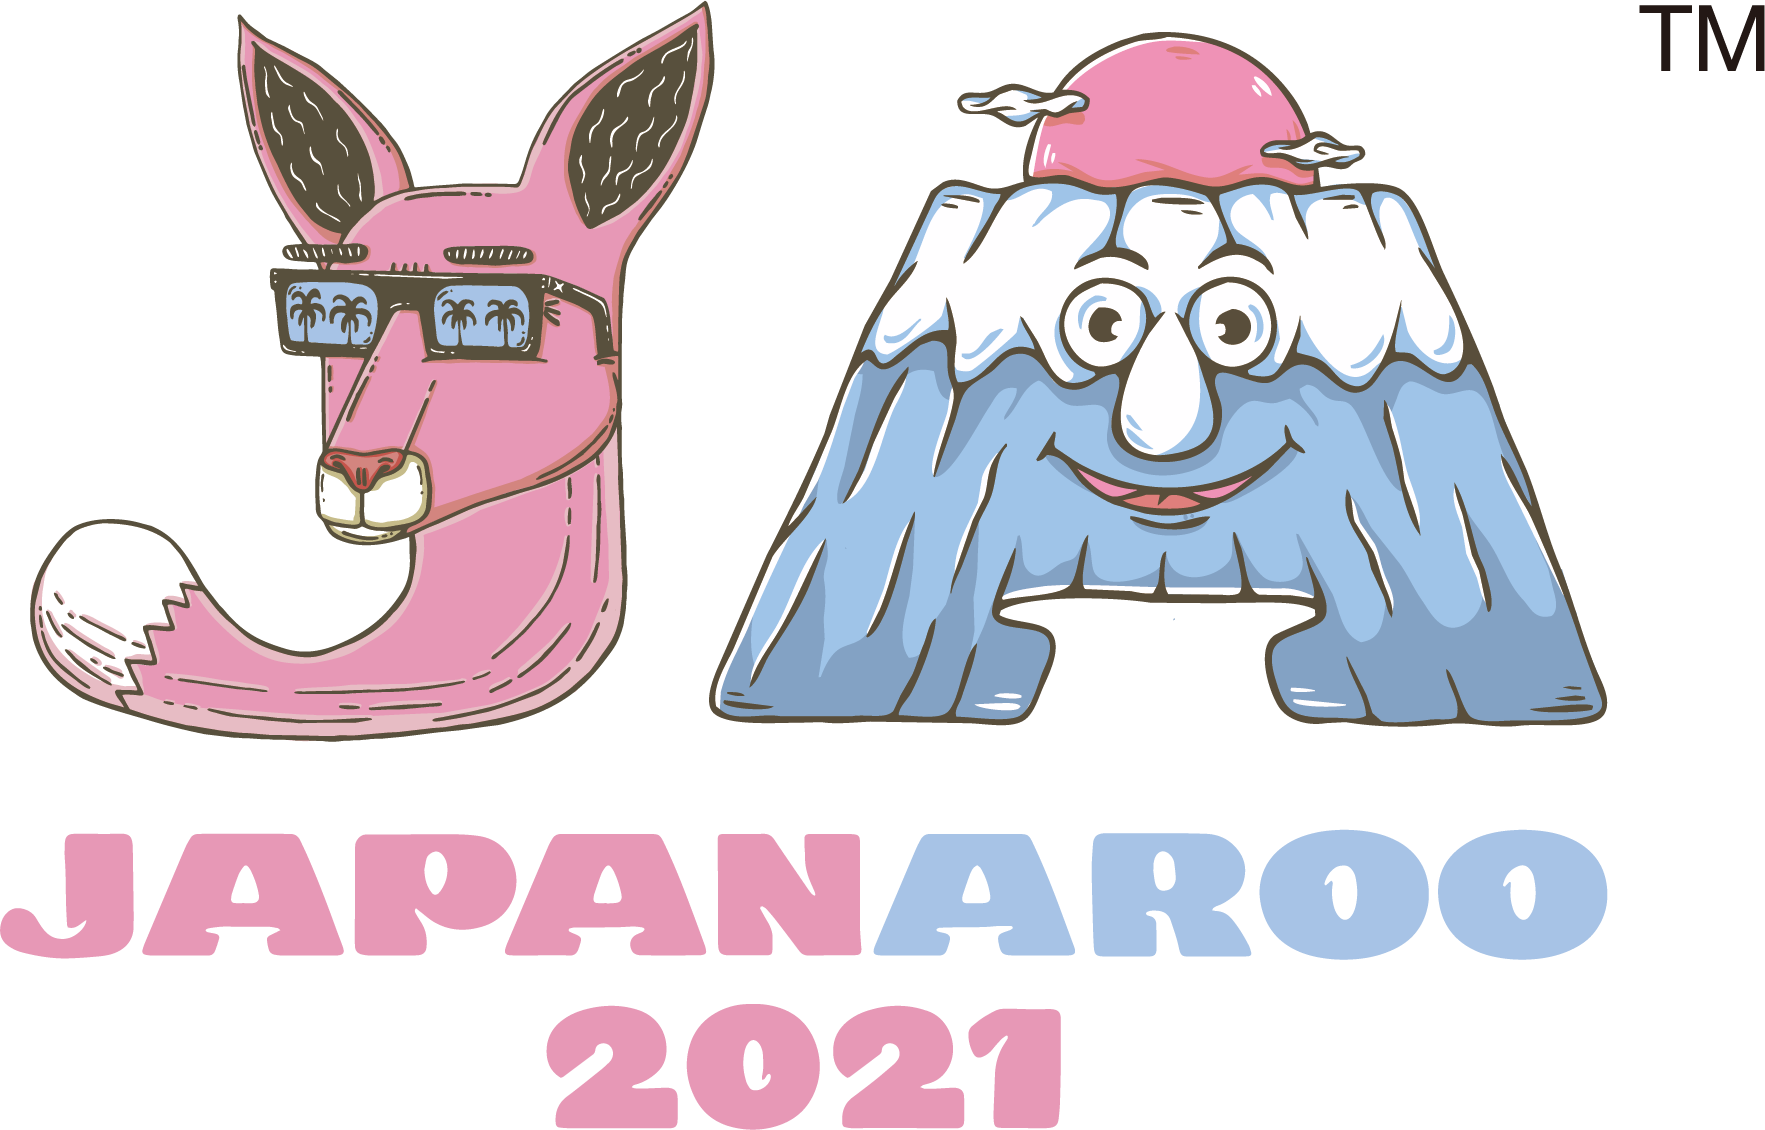 Japanaroo 2021